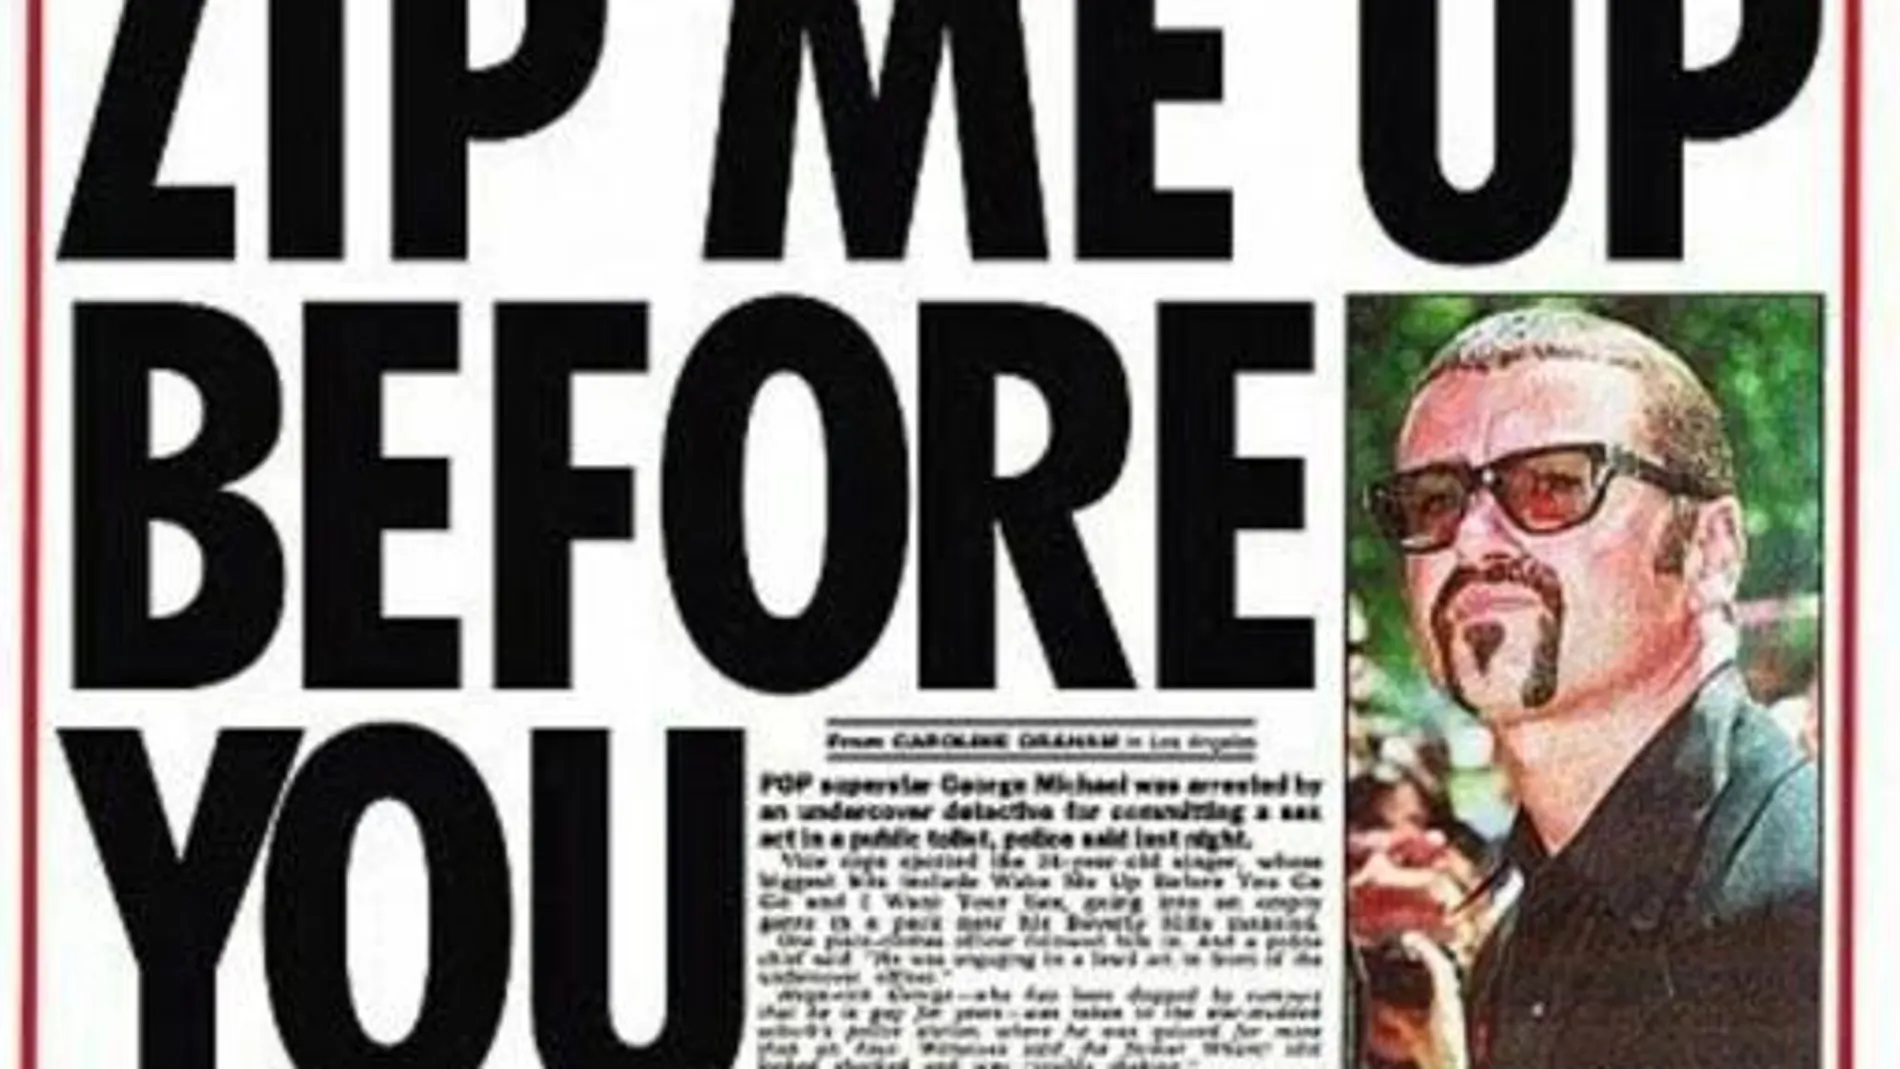 En la imagen, el periódico «The Sun» informa del incidente sexual de Michael en unos baños públicos con un juego de palabras sobre «subir la cremallera»